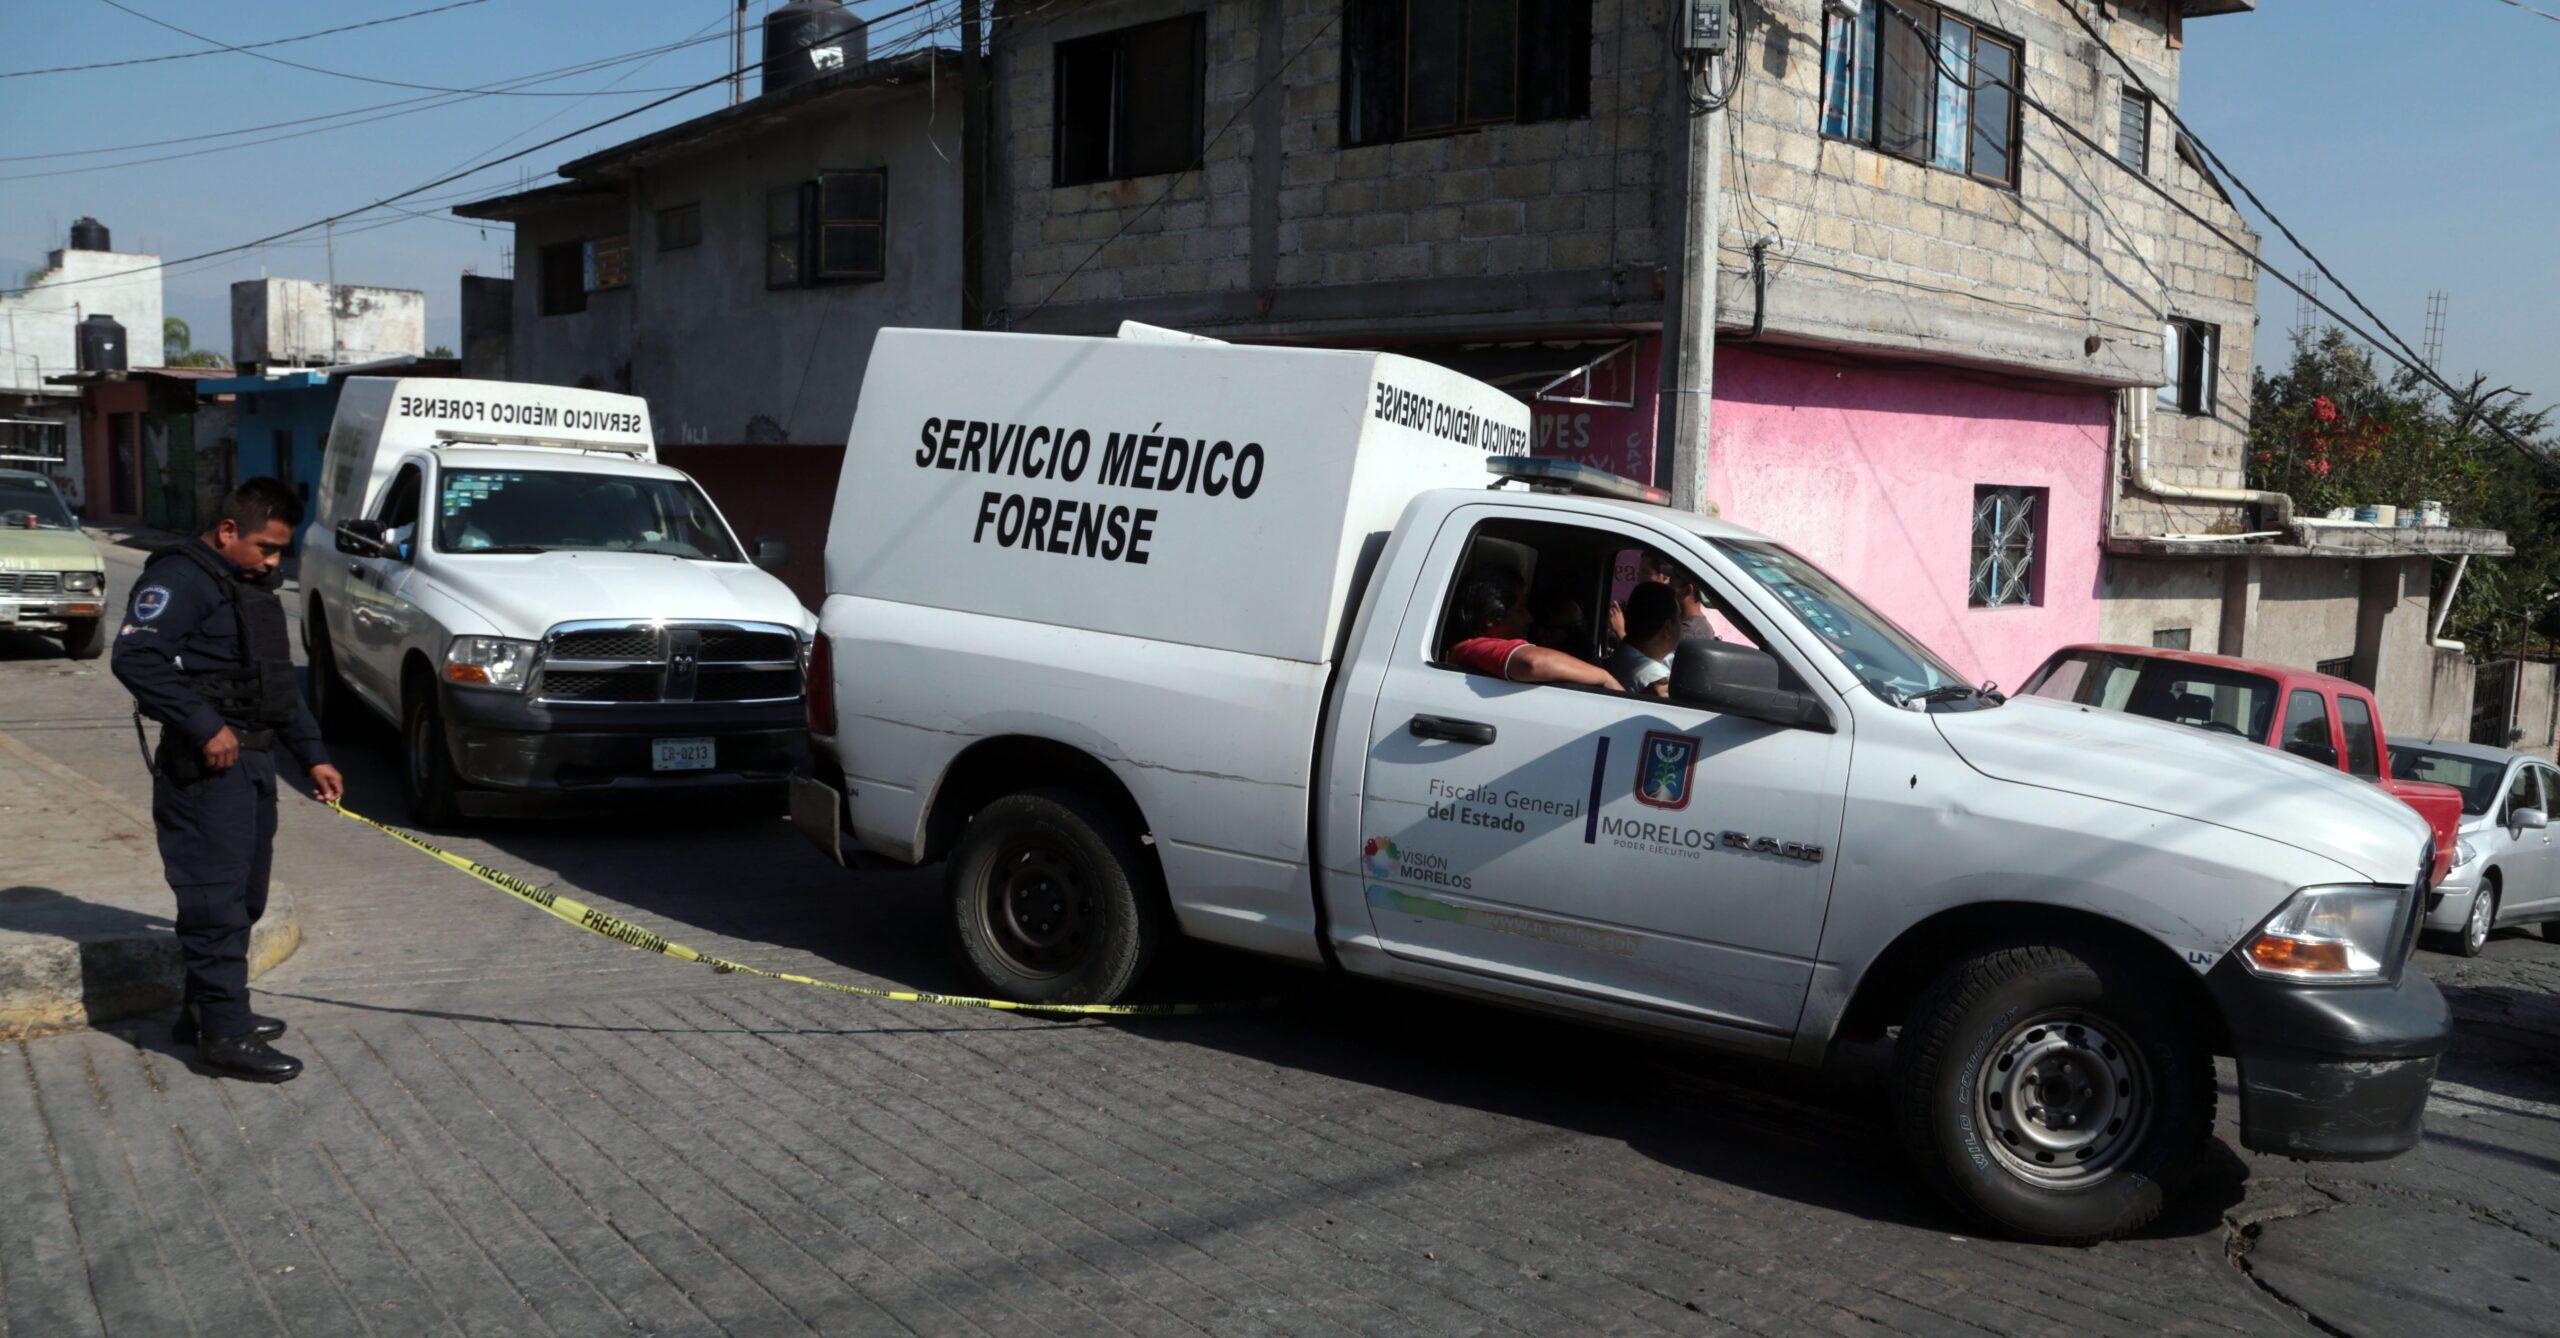 Policía de Morelos ejecutó a 4 mujeres, un bebé y un menor en Temixco, concluye CNDH